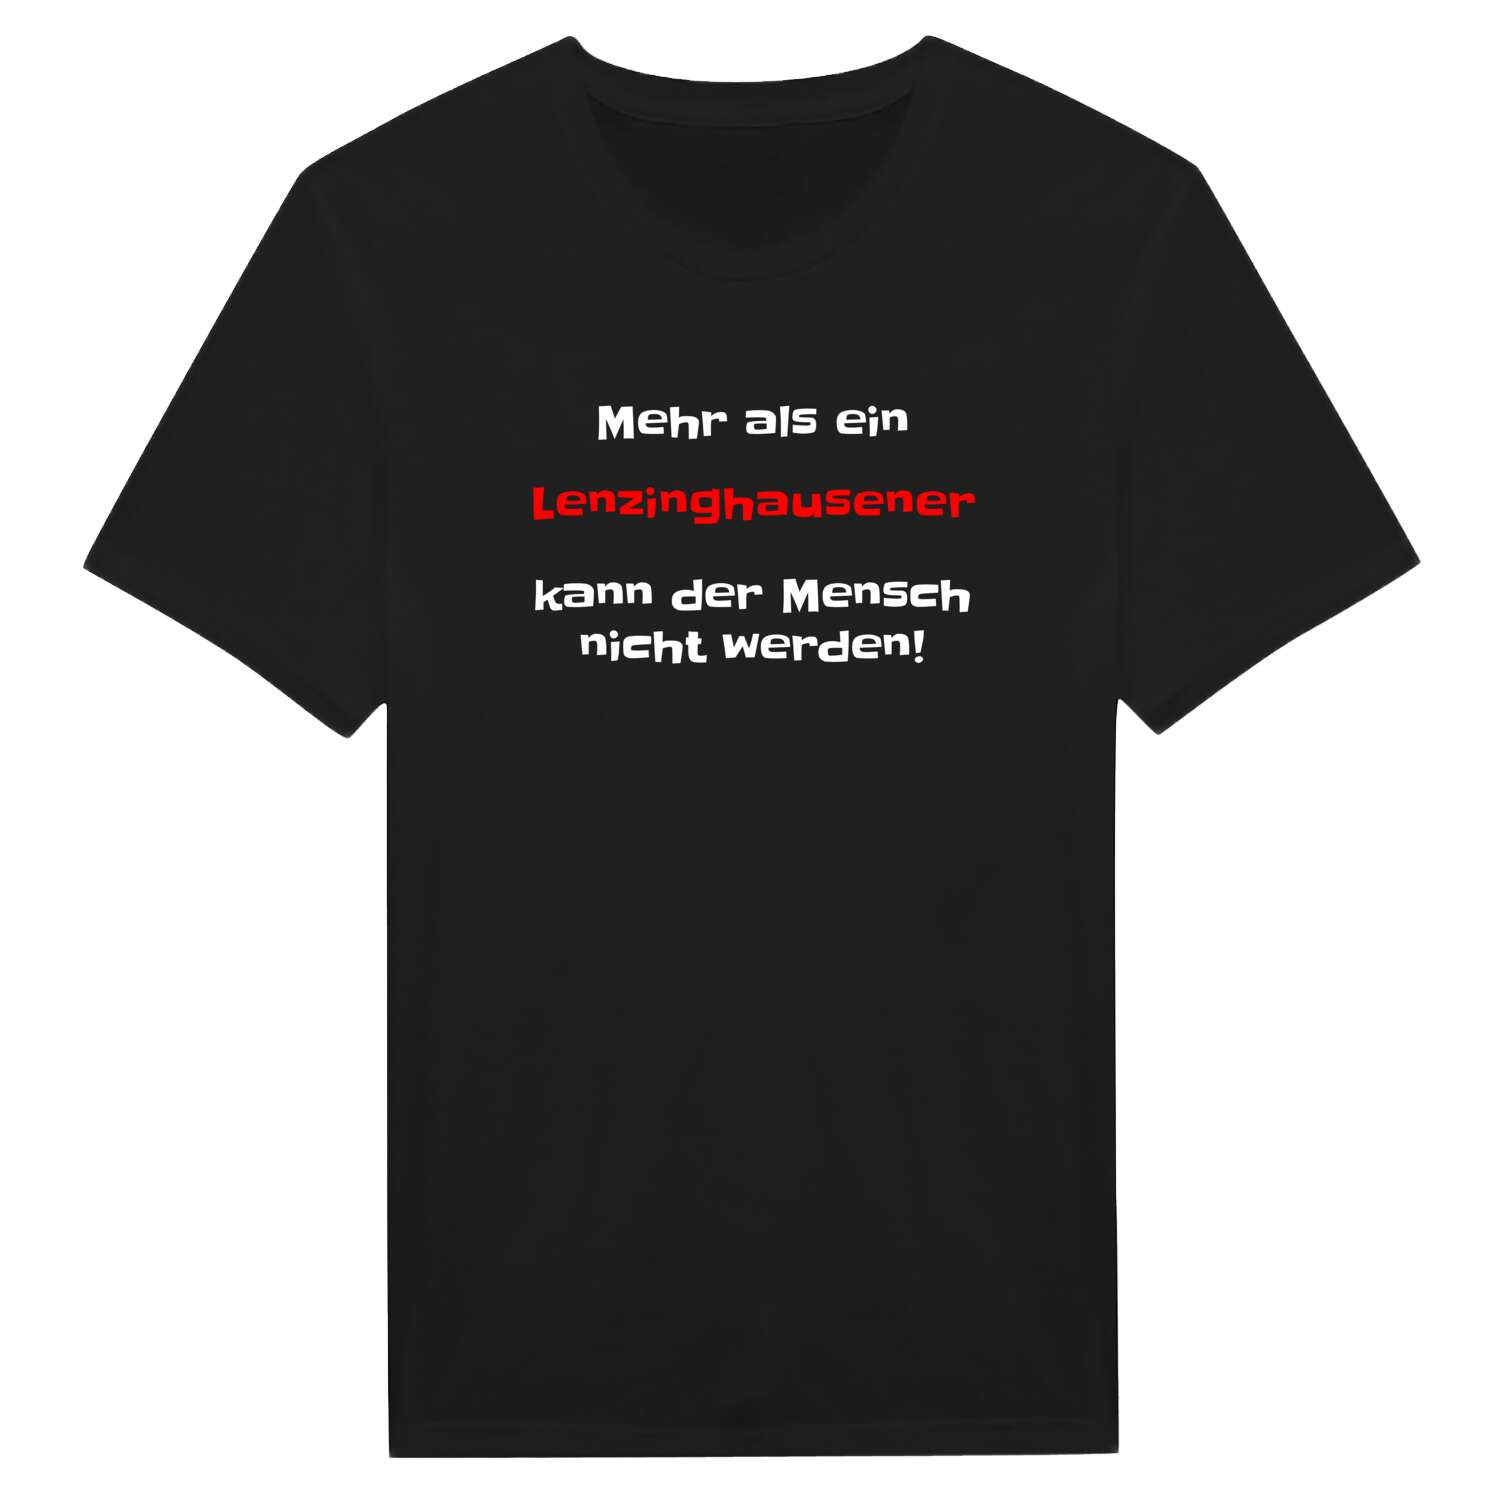 Lenzinghausen T-Shirt »Mehr als ein«